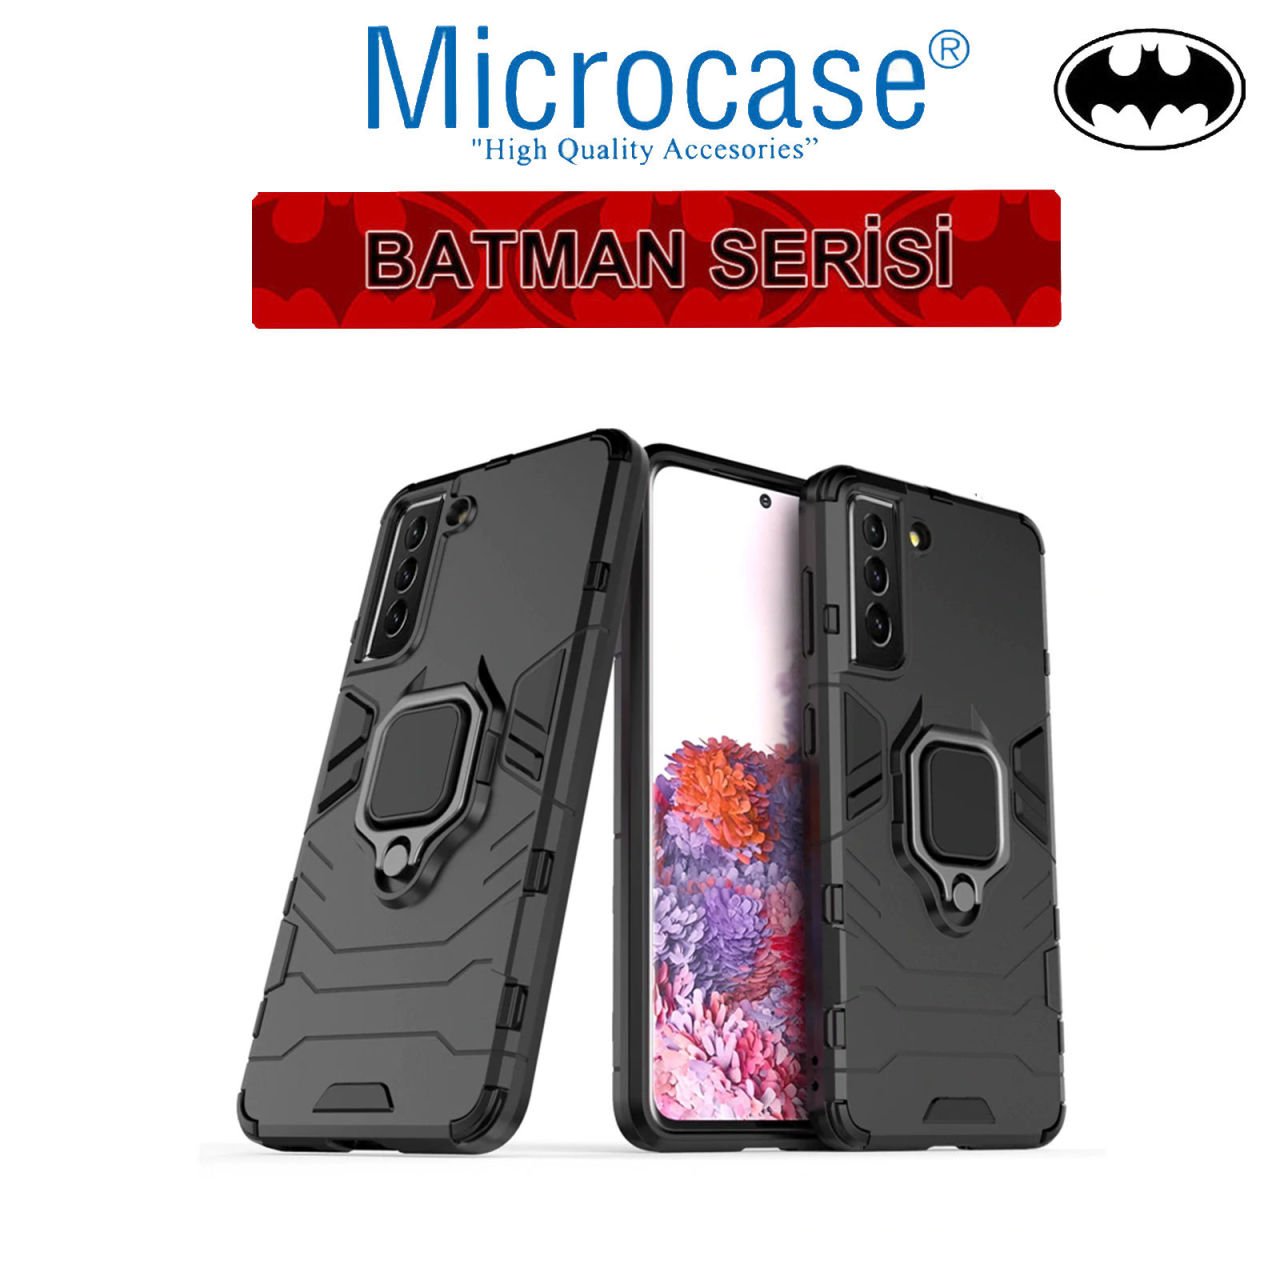 Microcase Samsung Galaxy S21 Batman Serisi Yüzük Standlı Armor Kılıf - Siyah